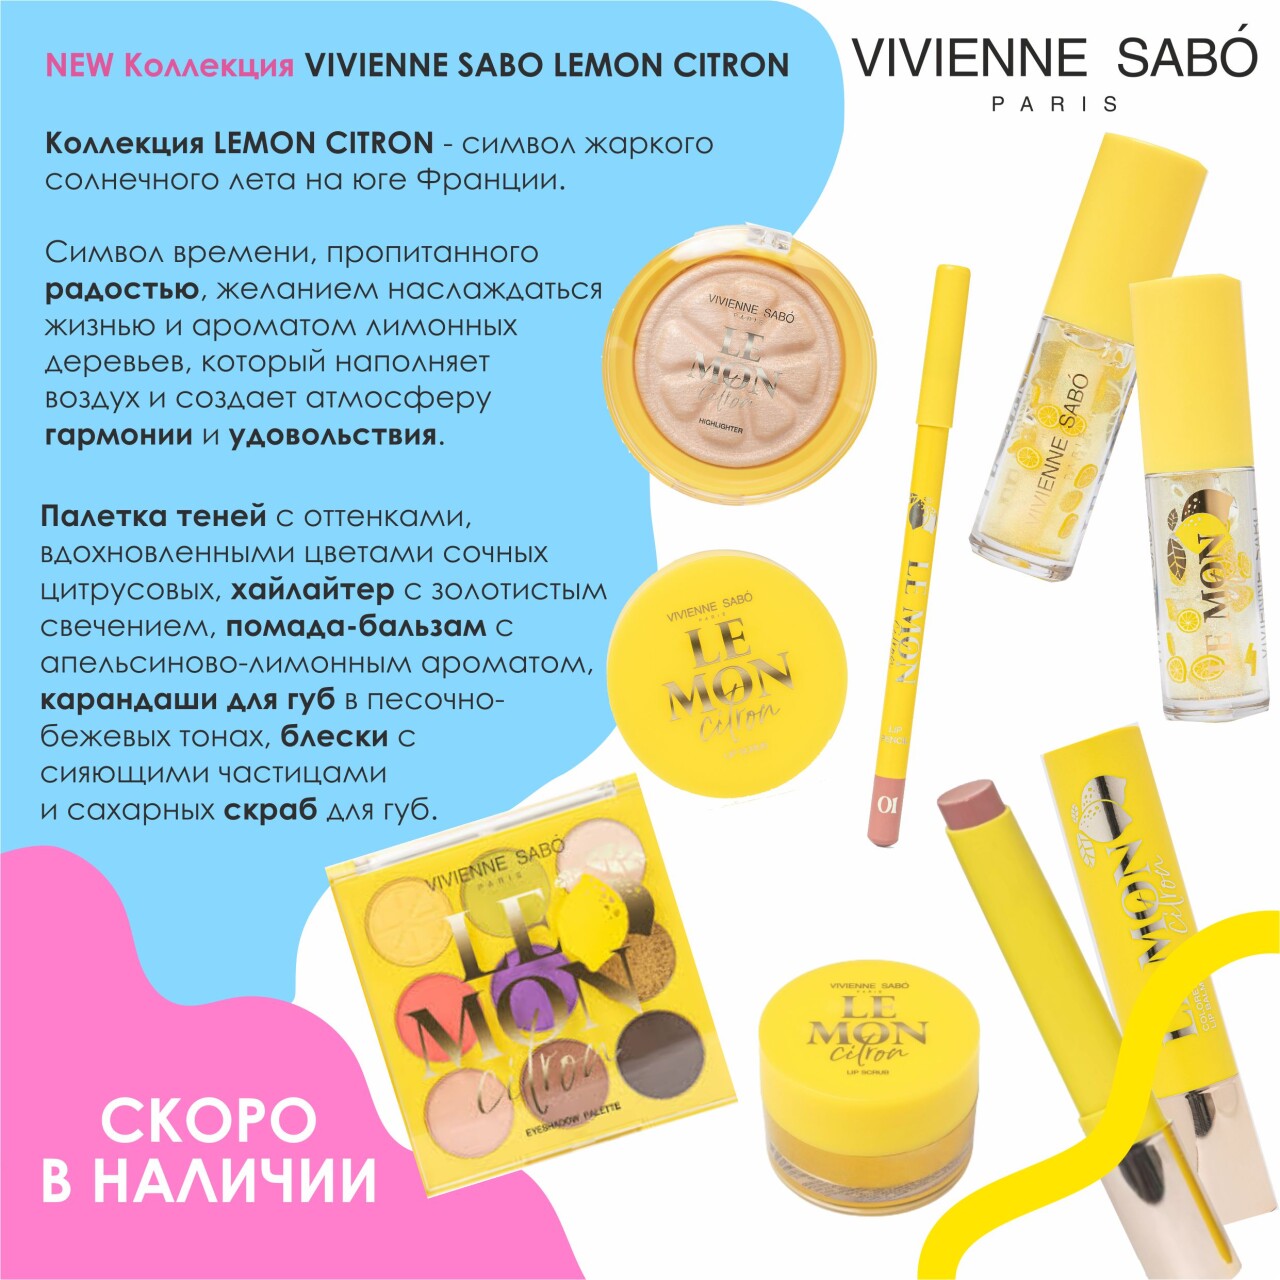 Vivienne Sabo NEW коллекция